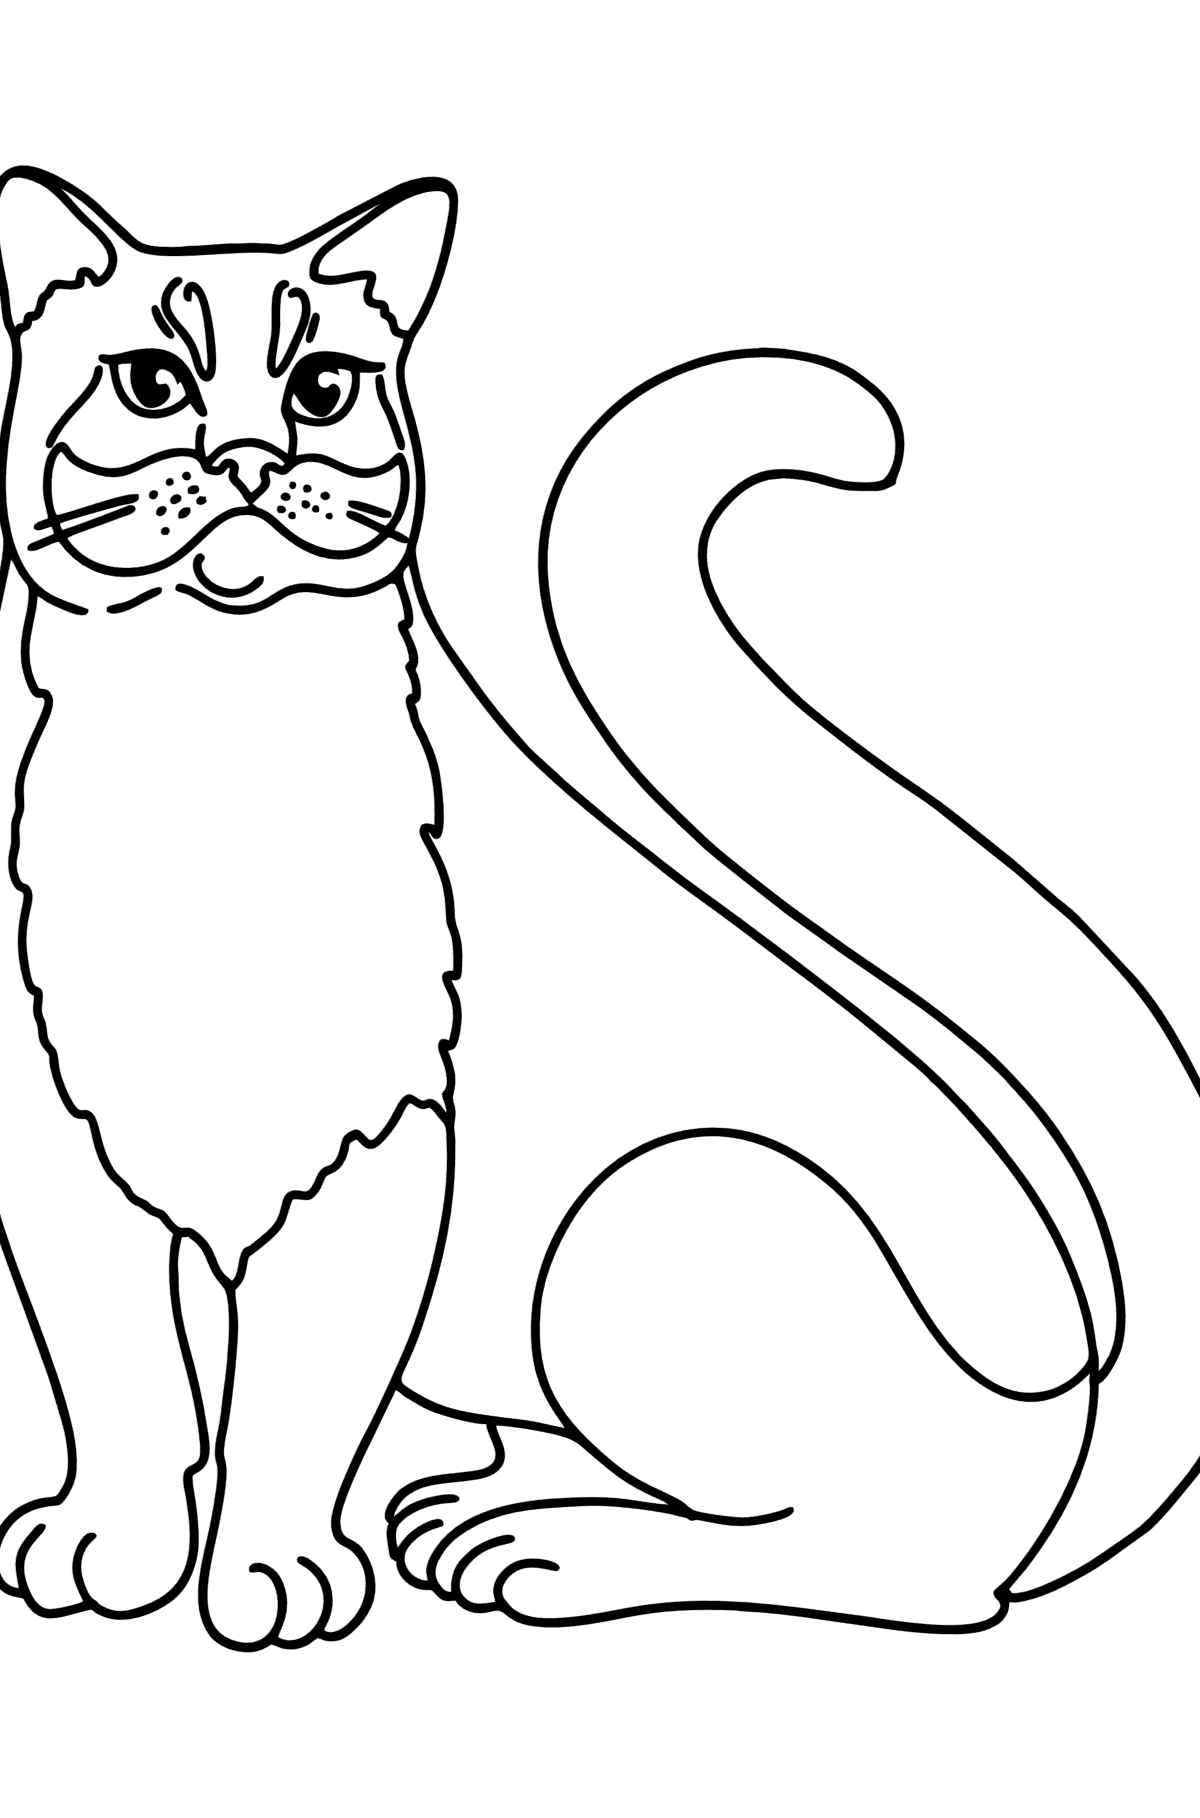 Tegning til fargelegging russisk blå katt - Tegninger til fargelegging for barn